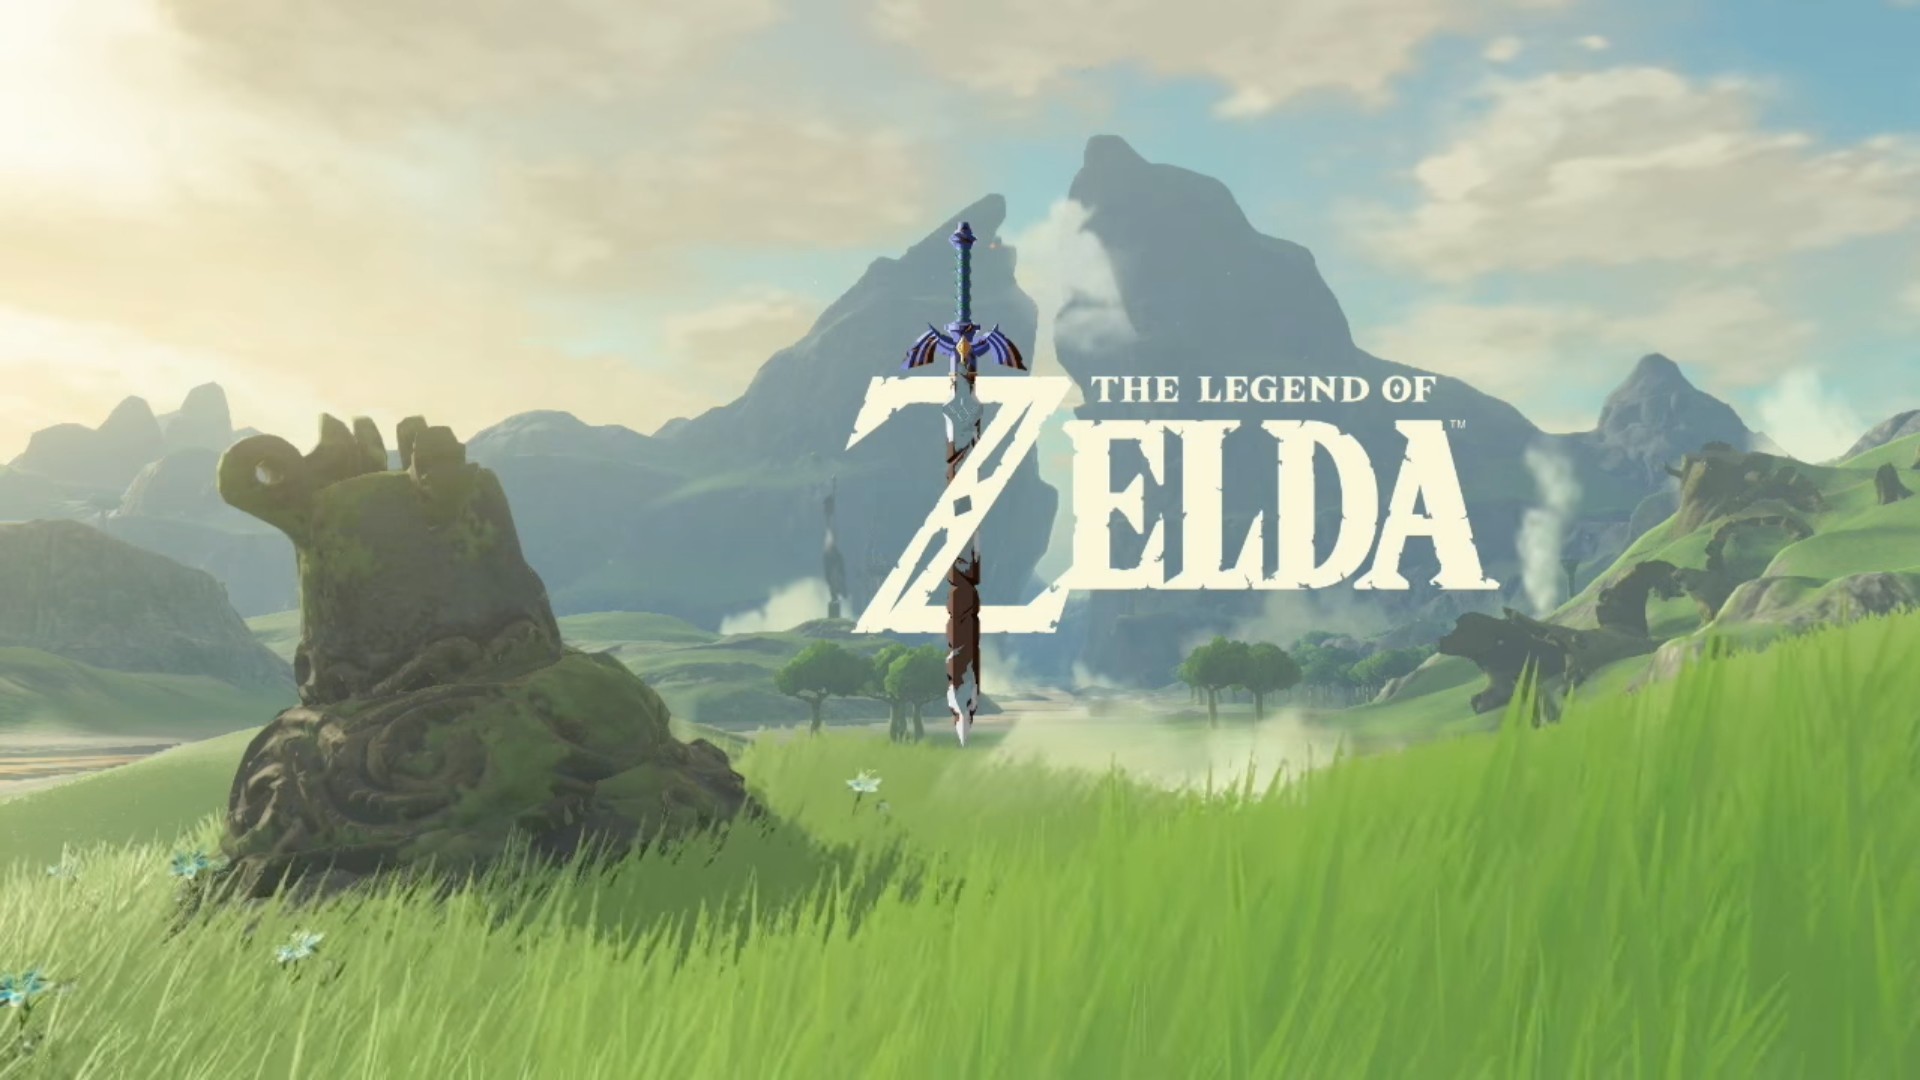 The Legend of Zelda, The Legend of Zelda Breath of the Wild Wallpaper